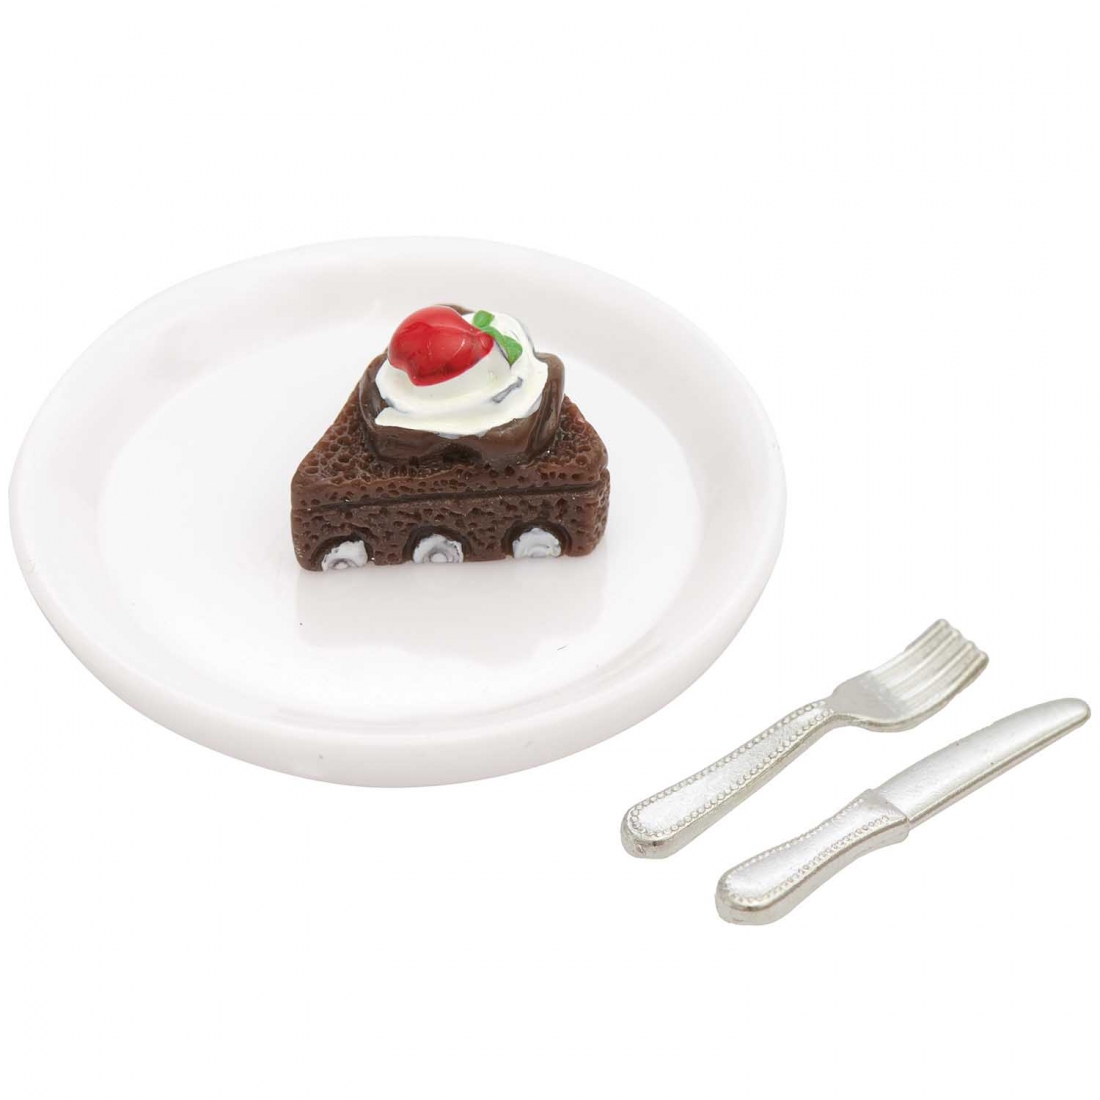 Tarta de chocolate en miniatura 1-3.5 cm